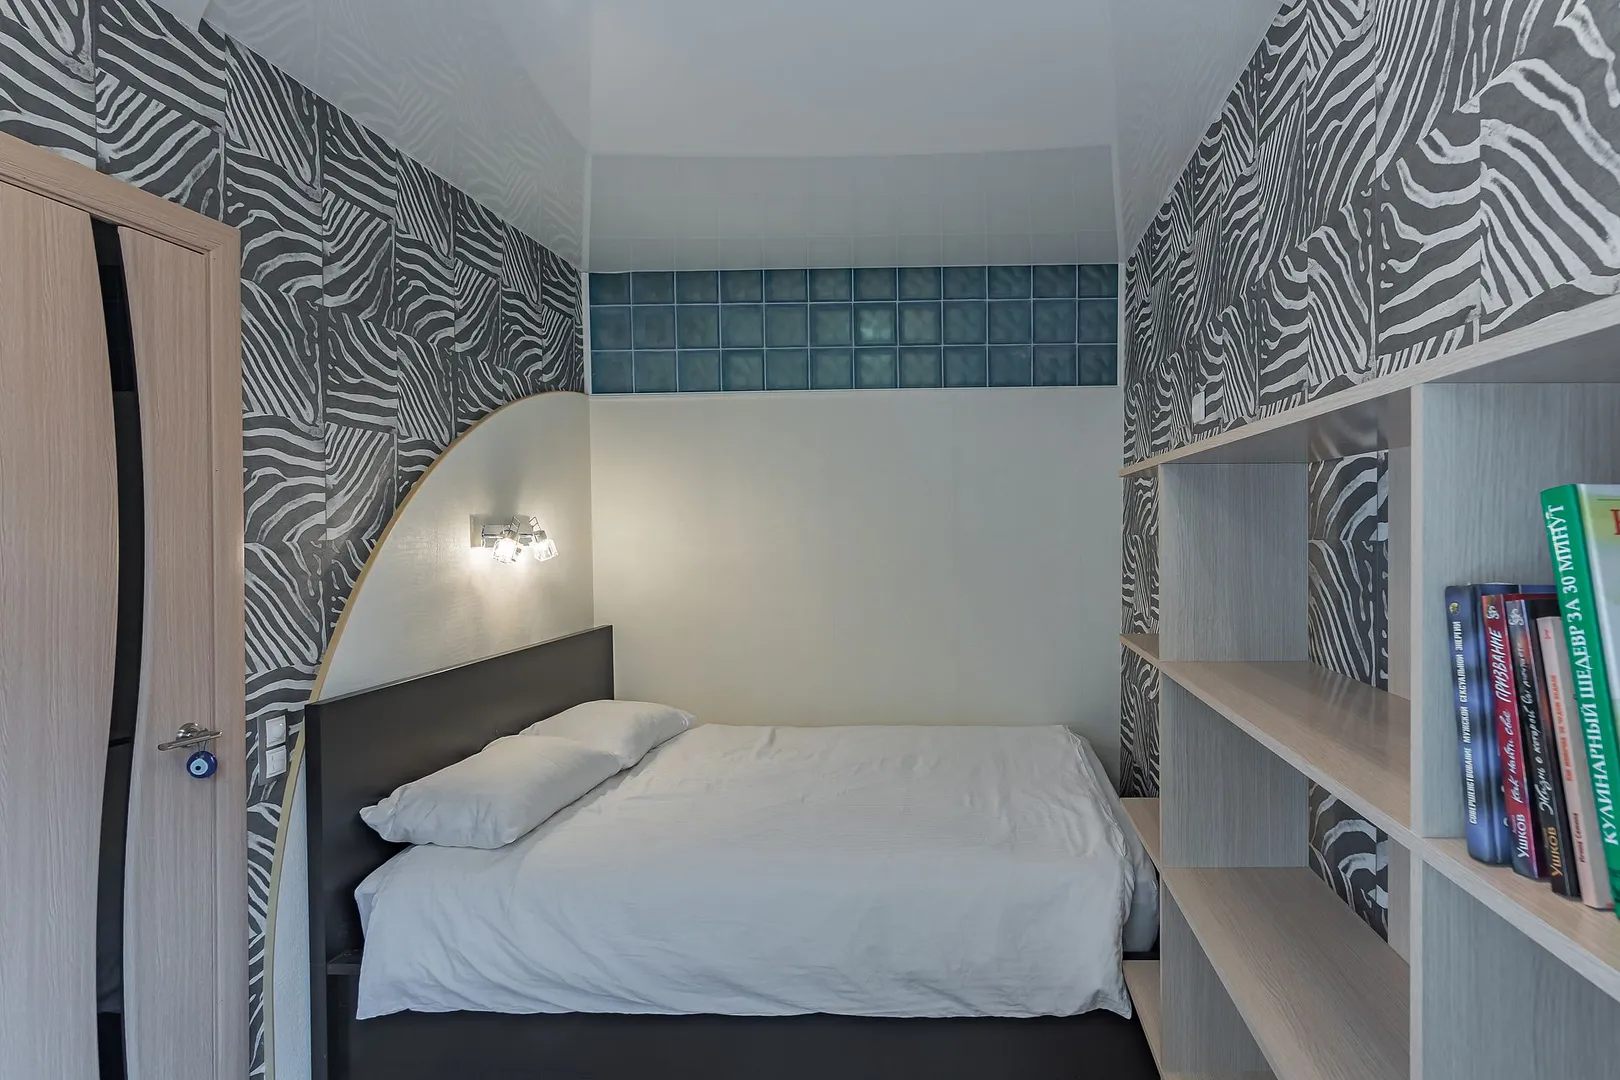 Отдельная спальня, кровать 1,4 на 2,05 метра. Подсветка над кроватью + стеклоблоки с подсветкой. Отрытый стелаж для вещей и книг